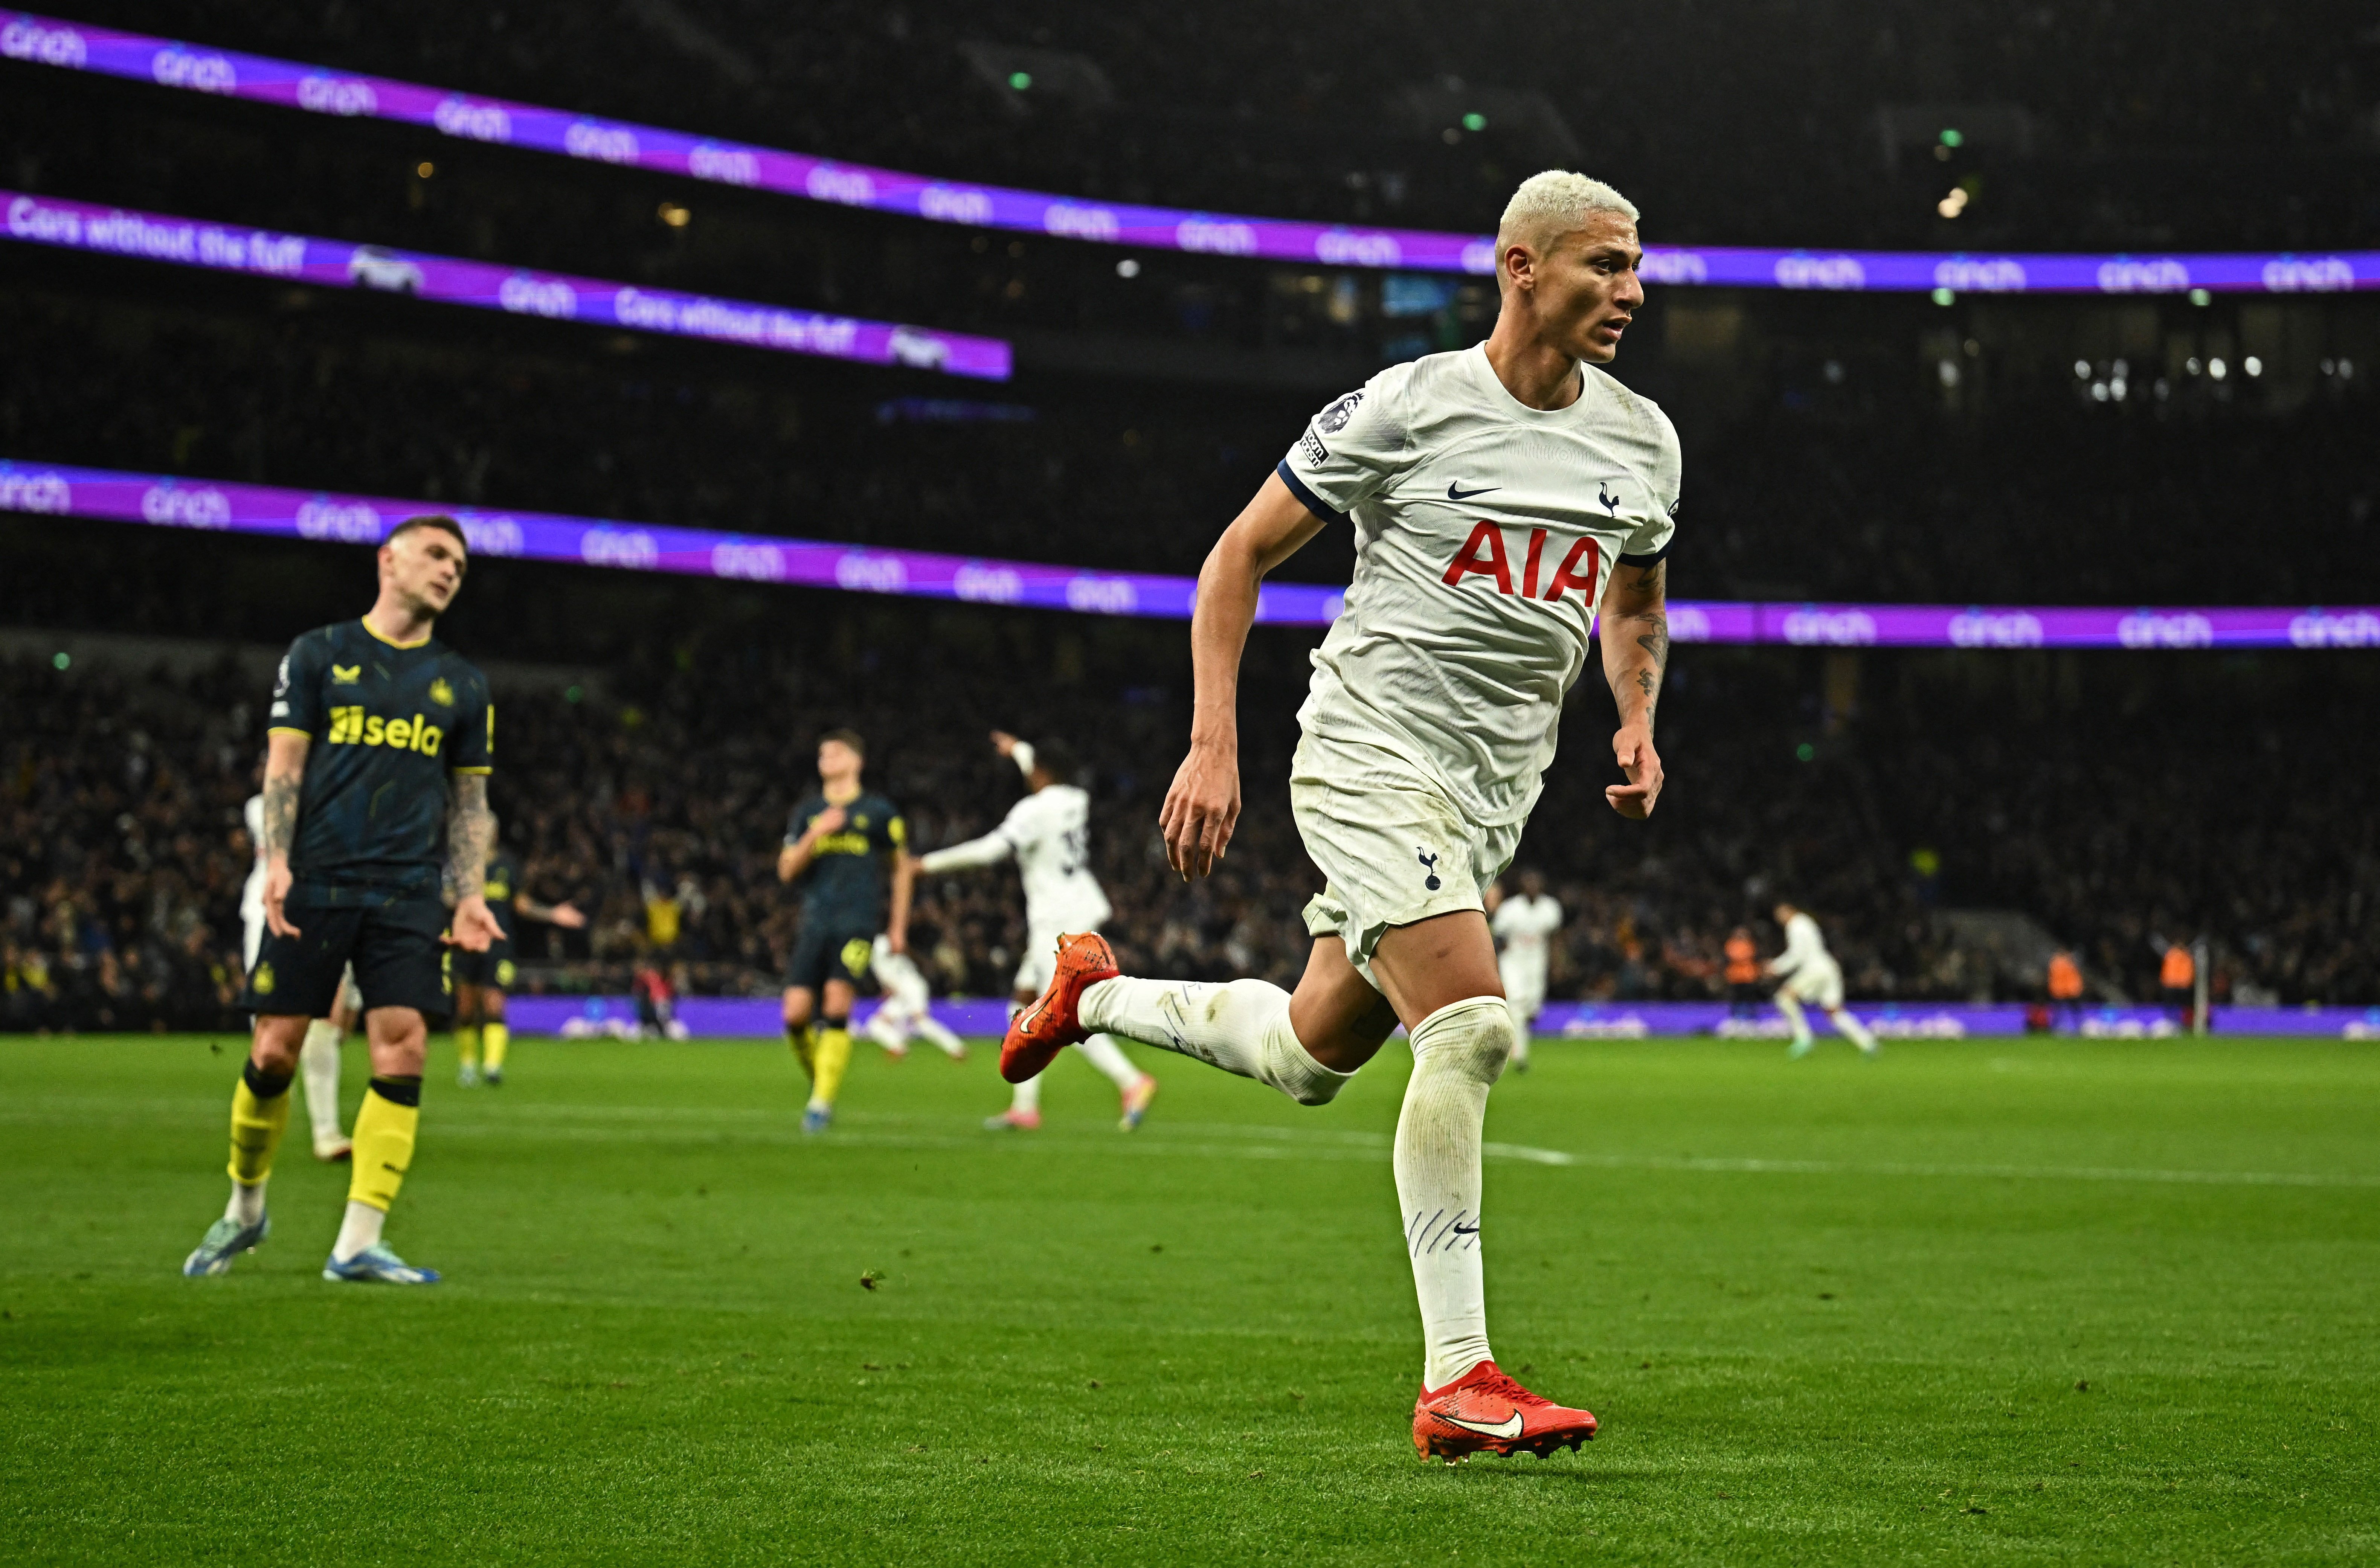 Atacante capixaba fez dois gols na vitória do Tottenham sobre o Newcastle neste domingo (10), pelo Campeonato Inglês